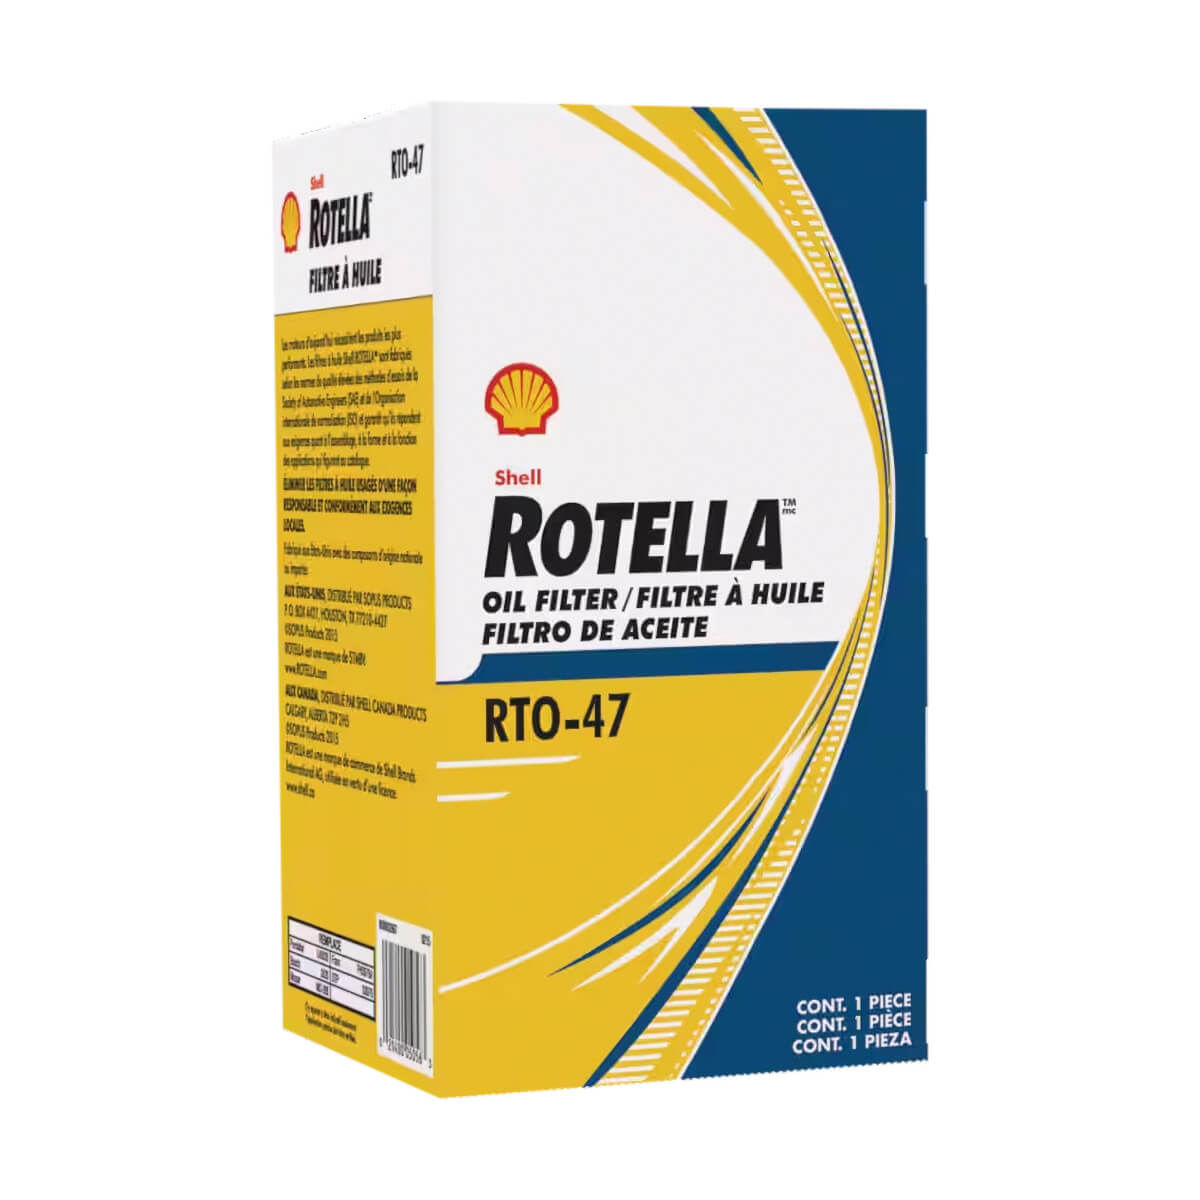 Shell Rotella RTO-47 Oil Filter